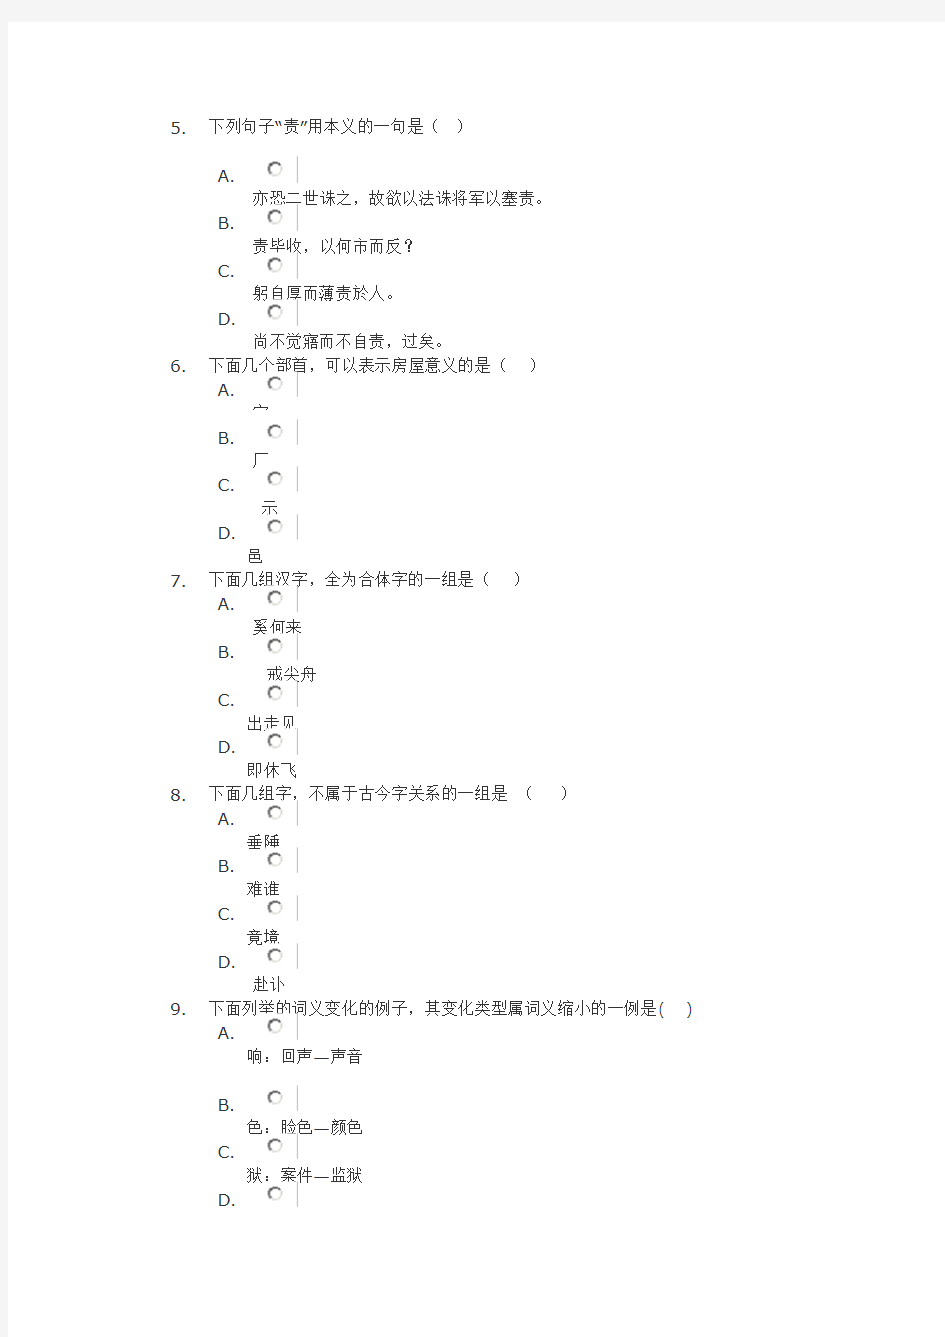 四川大学网络教育 古代汉语上 第一次网上作业答案